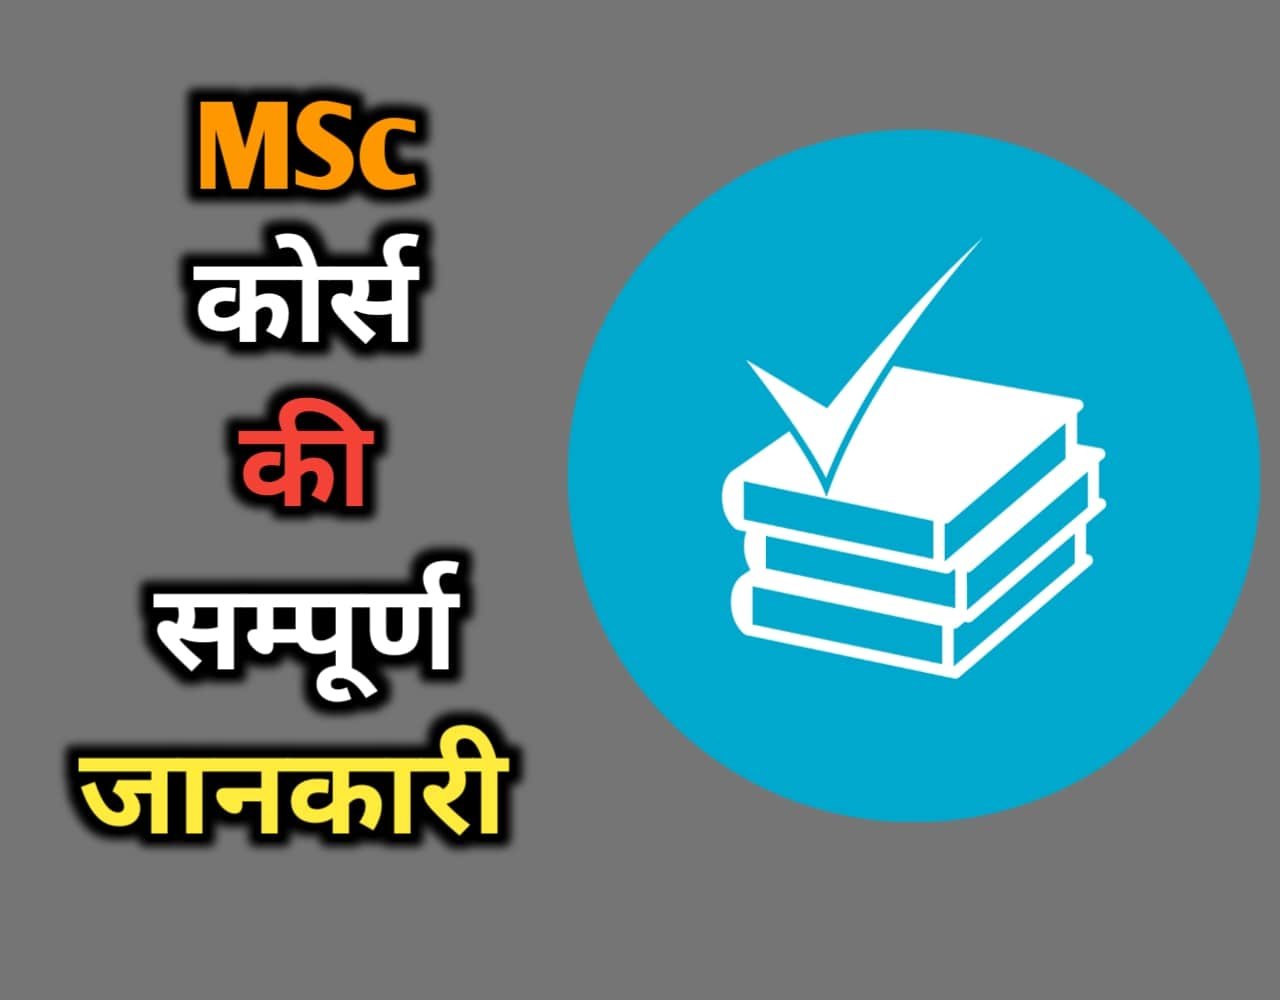 MSc Course Details In Hindi | MSc कोर्स क्या है?